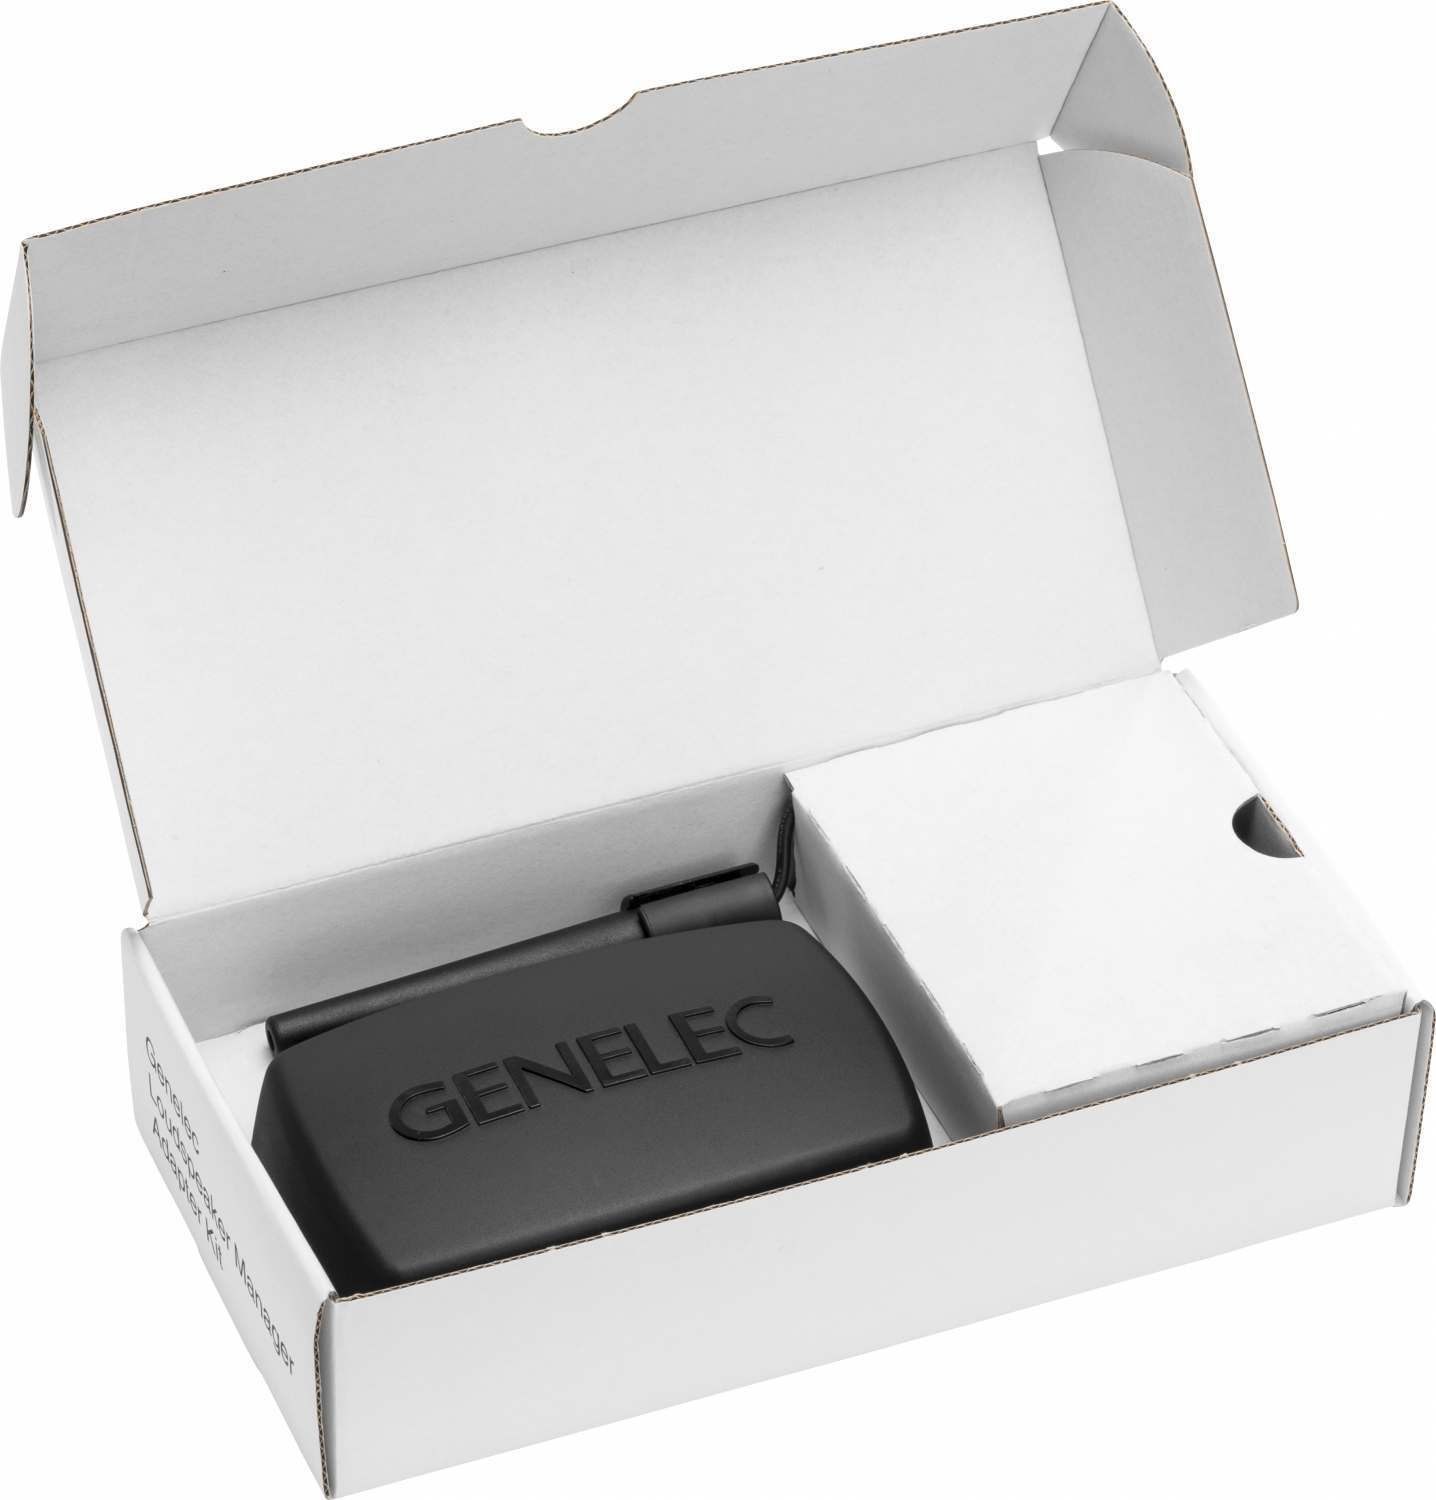 Genelec GLM-Set 3.0 besteht aus Messmikrofon, Netzwerk-Interface und Software